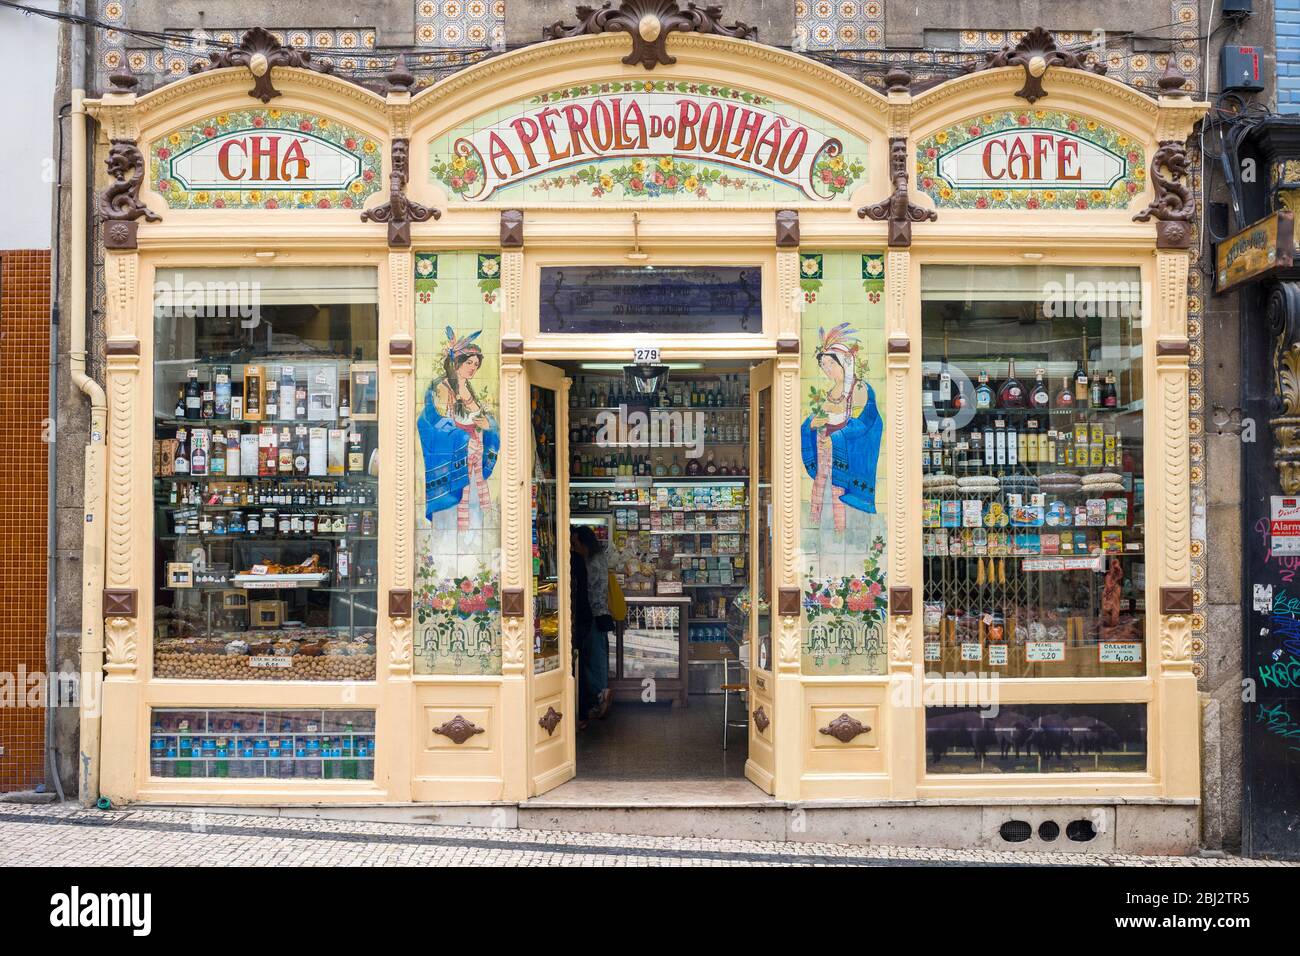 Pintoresco café tradicional Eperola do Bolhao, y tienda de delicatessen en Oporto, Portugal Foto de stock